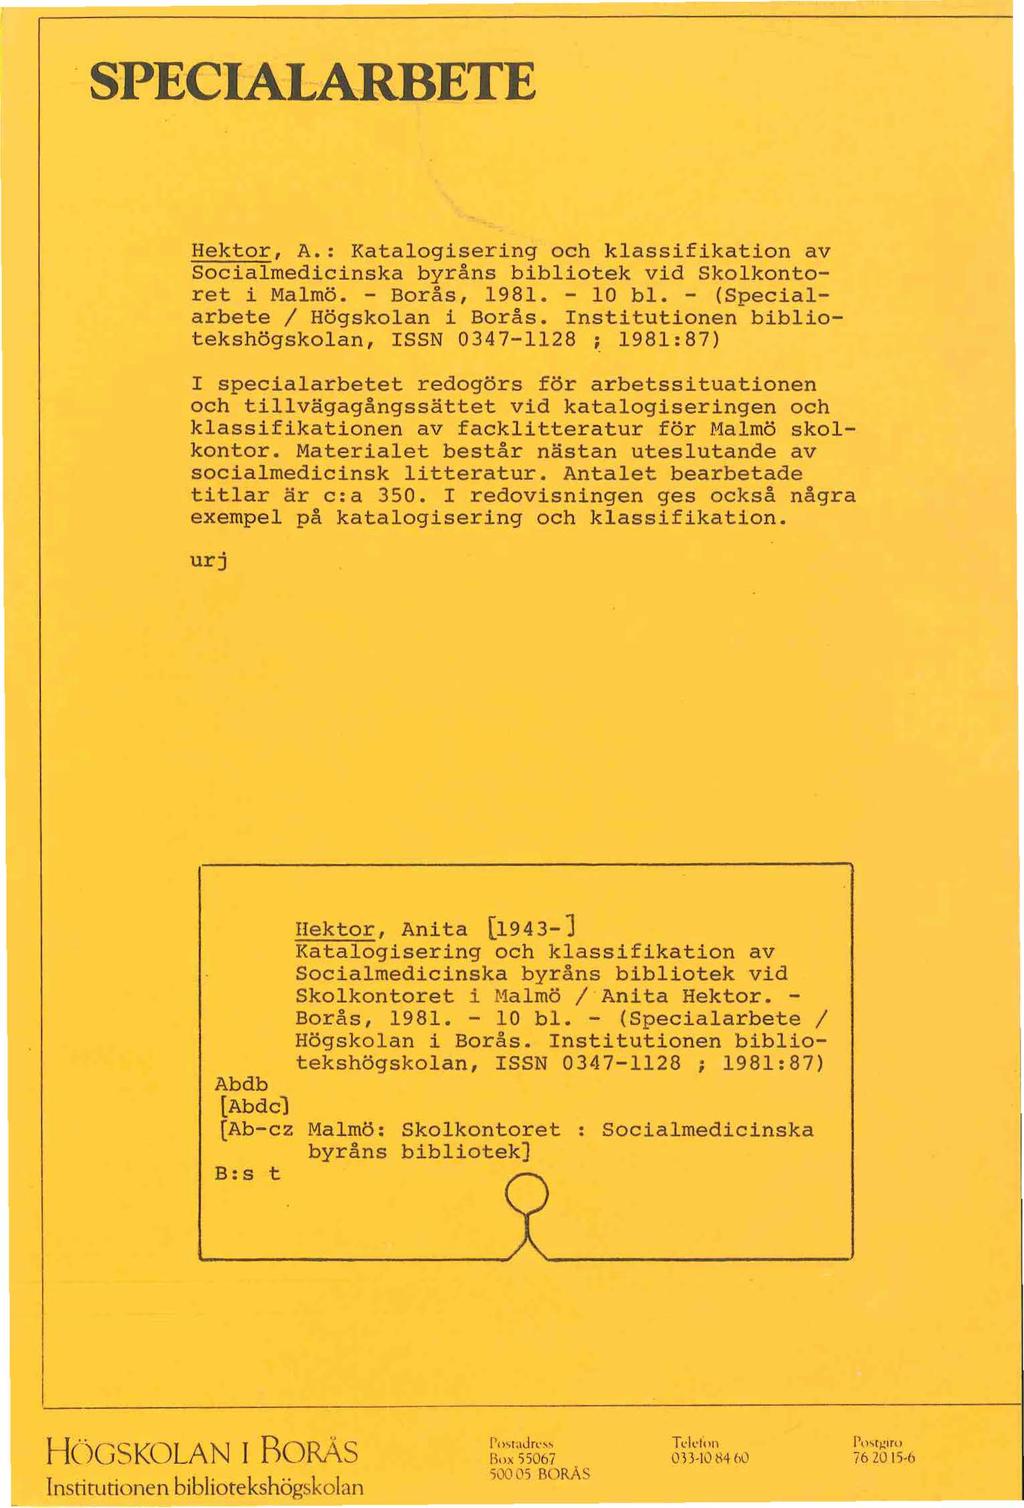 SPECIALARBETE Hektor, A. : Katalogisering och klassifikation av Socialmedicinska byrans bibliotek v id Skolkontoret i Malmo. - Boras, 1981. - 10 bl. - (Specialarbete I Hogskolan i Boras.